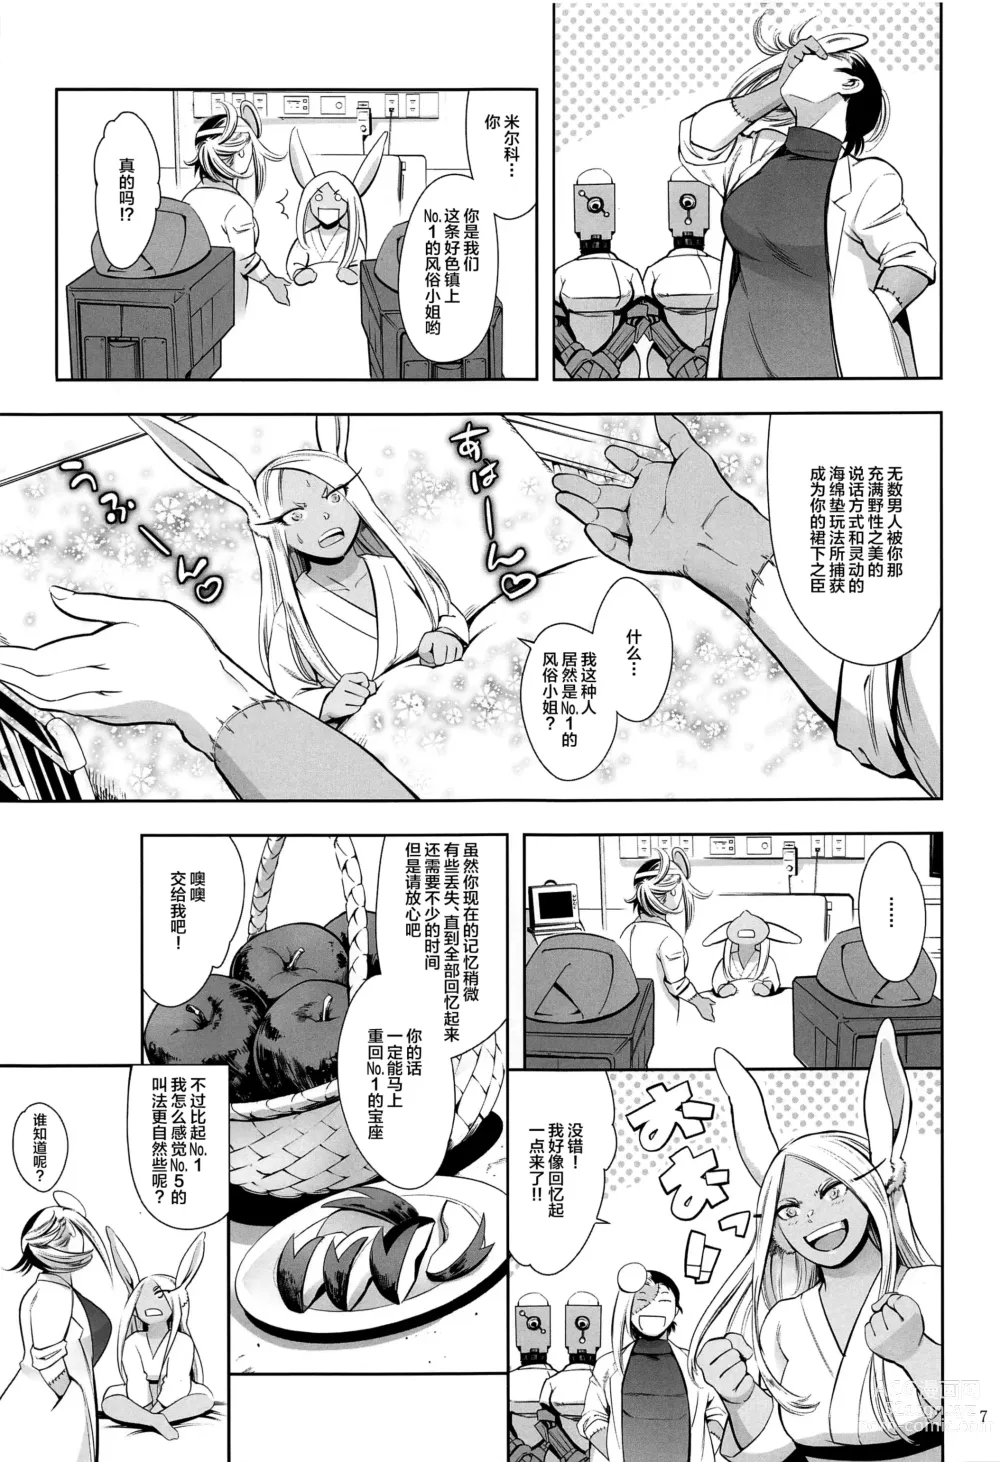 Page 6 of doujinshi Goshimei wa Usagi desu ka?